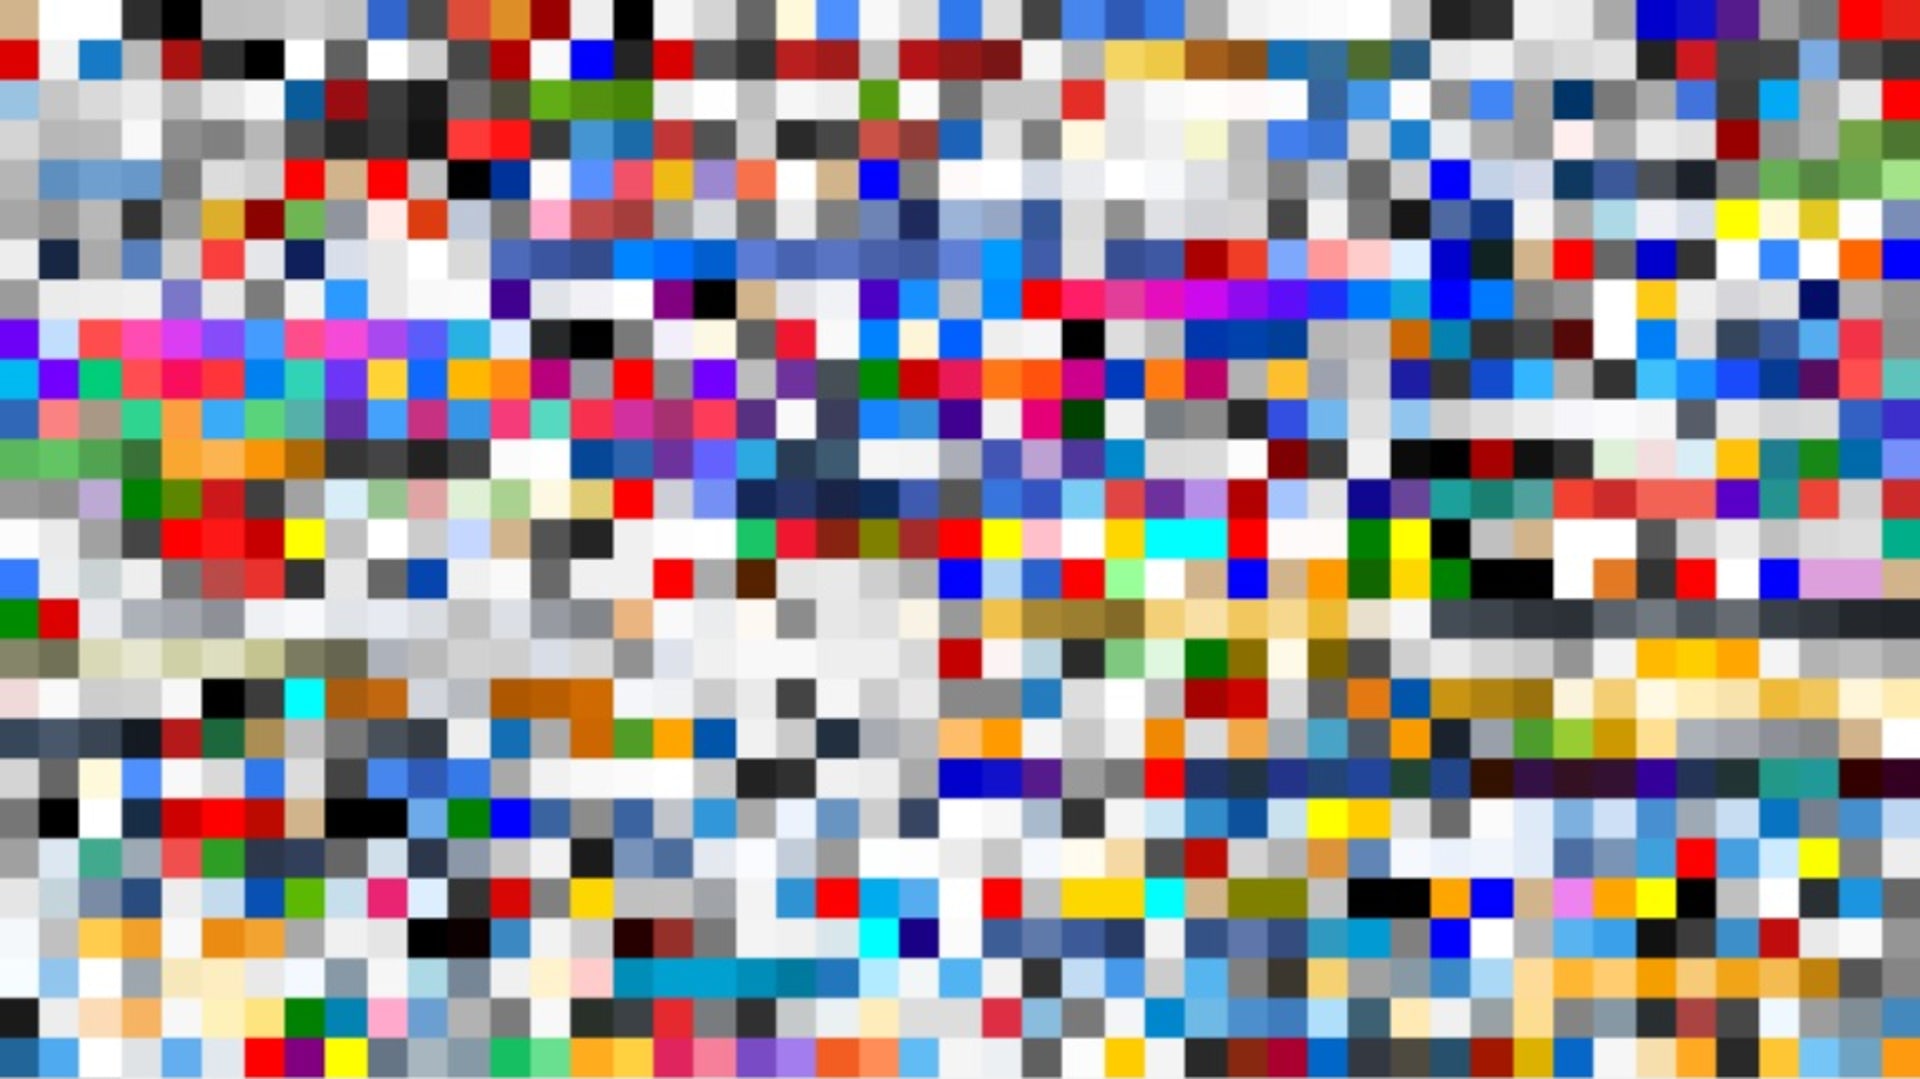 Takhle vypadá barevné spektrum deseti největších stránek na internetu